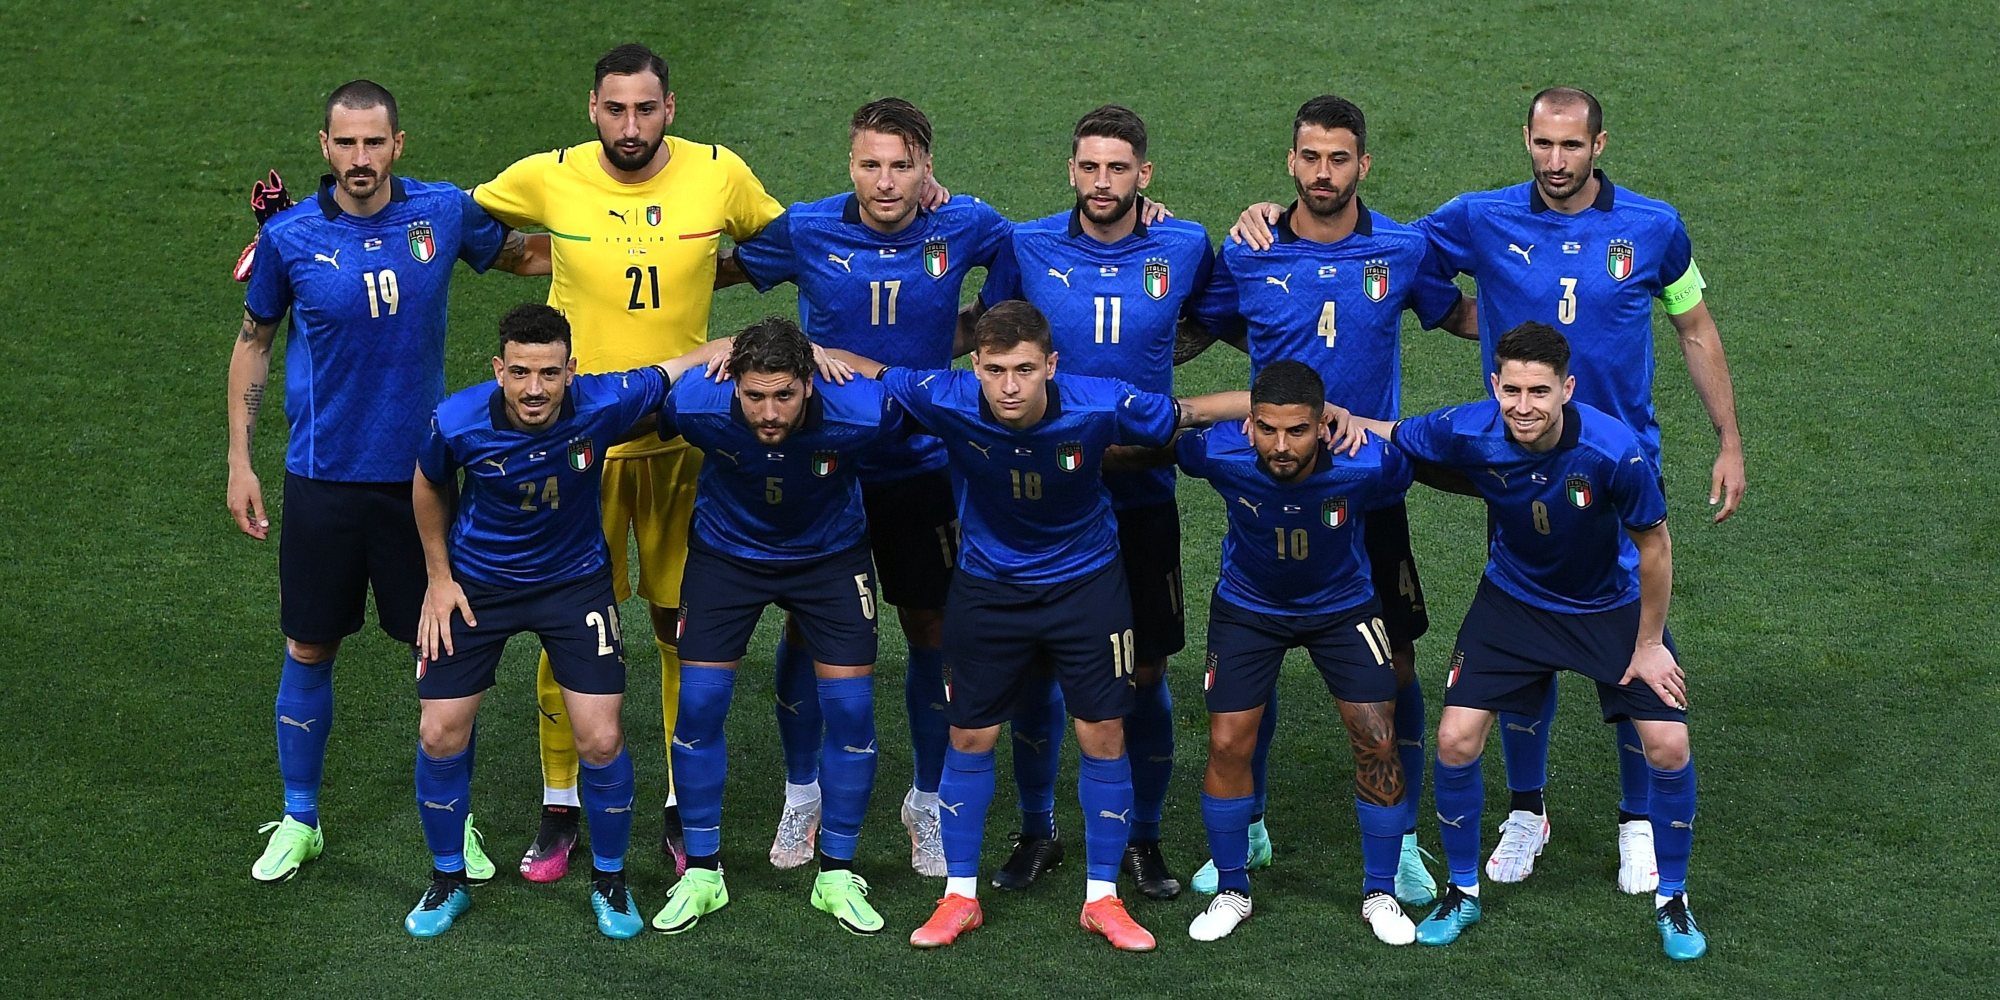 Itália fez uma qualificação 100% vitoriosa para o Europeu, com 10 triunfos frente a Finlândia, Grécia, Bósnia, Arménia e Liechtenstein